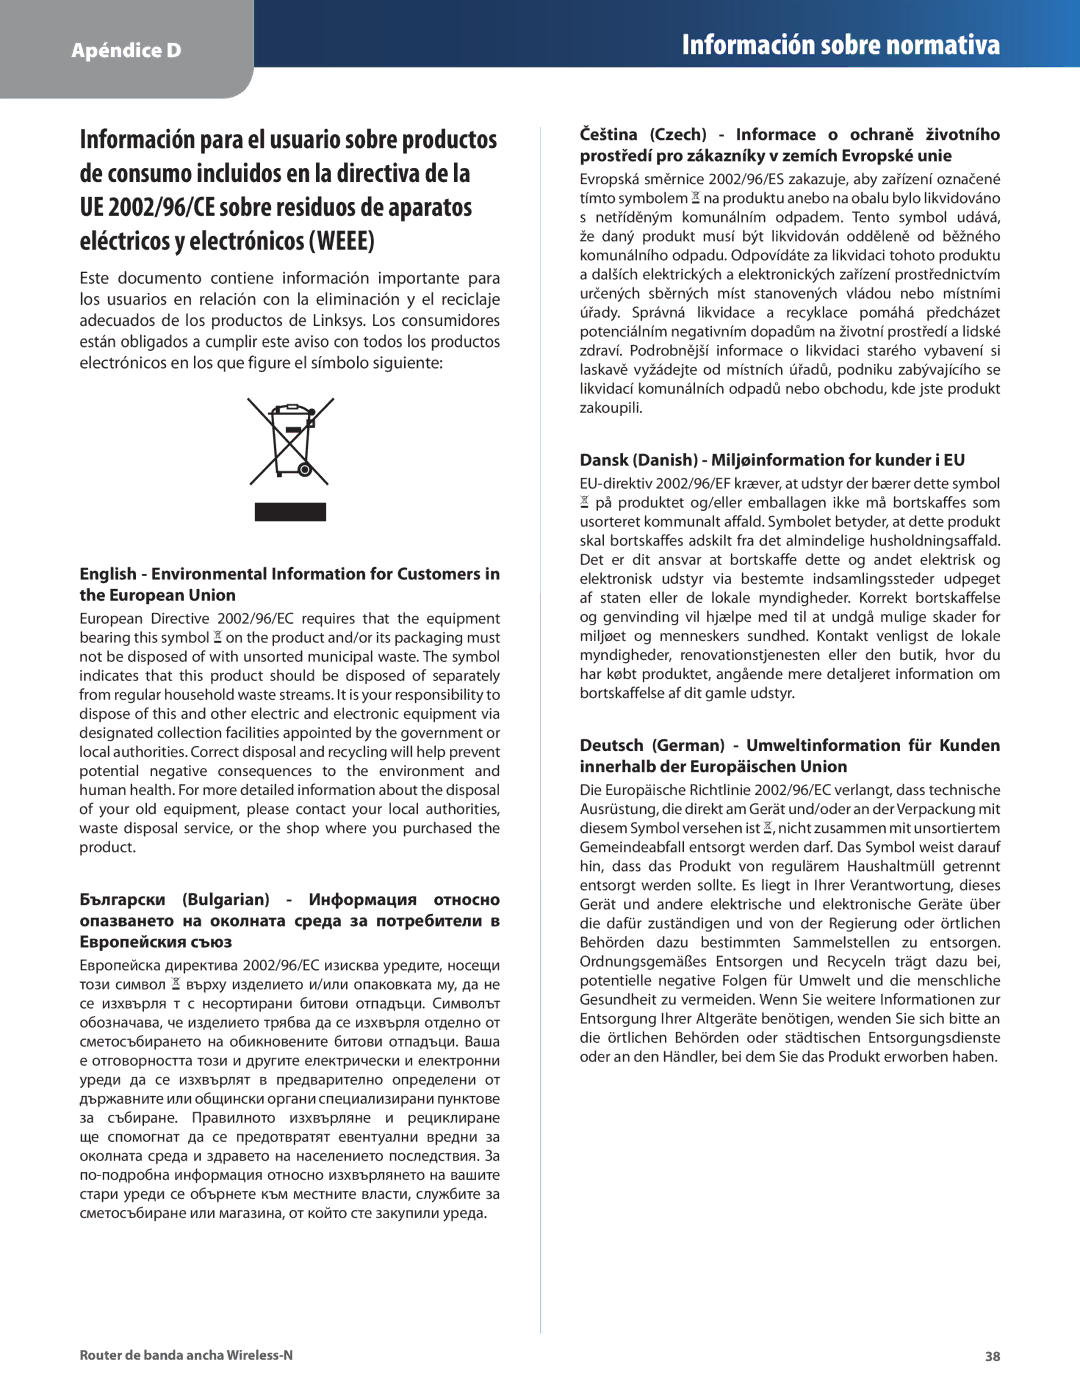 Linksys WRT160N manual Dansk Danish Miljøinformation for kunder i EU 